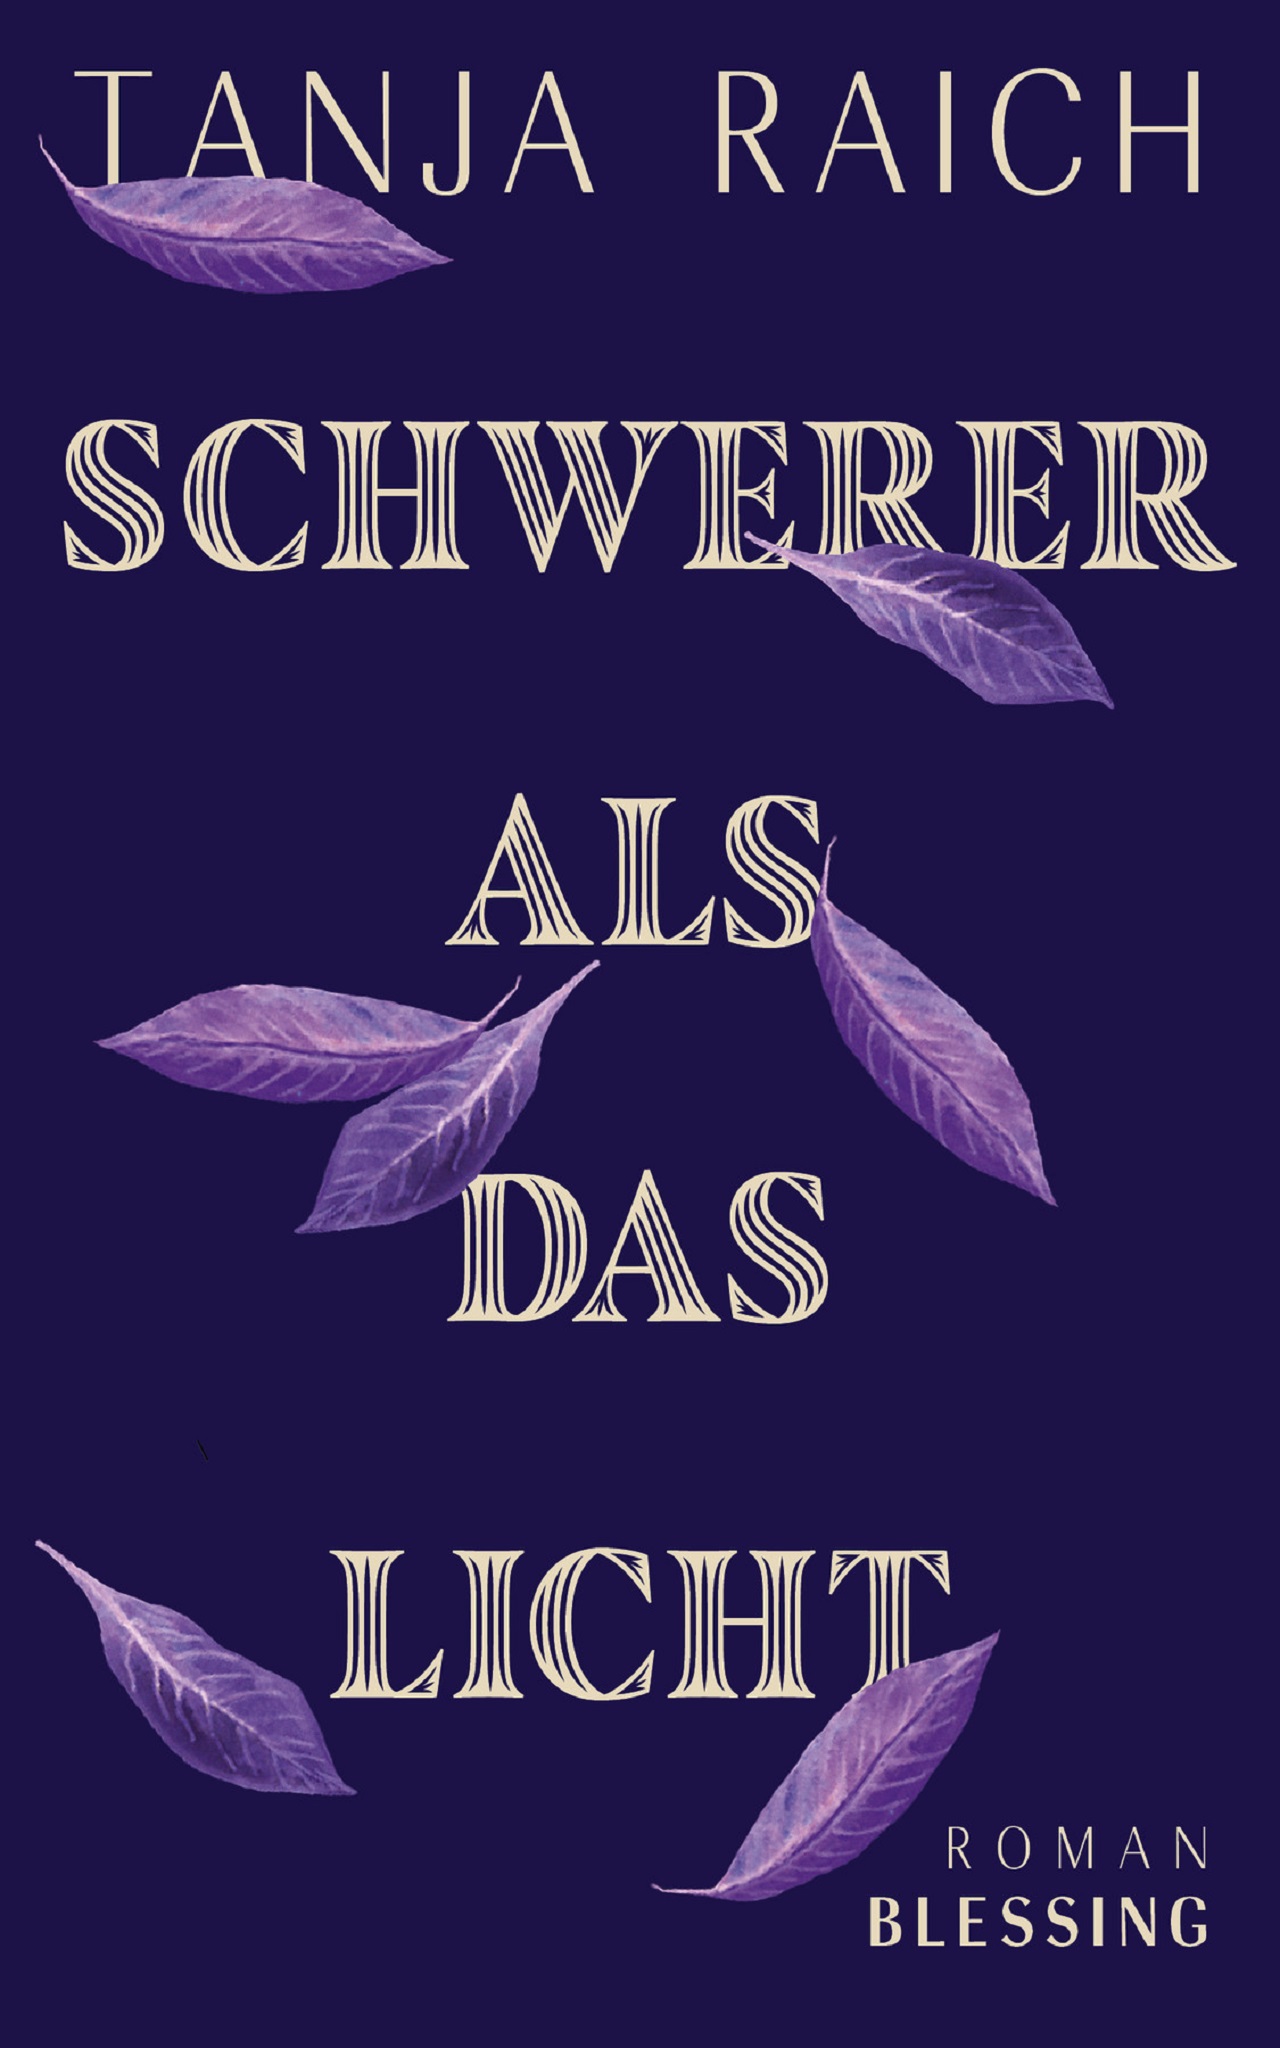 Buchcover zu "Schwerer als das Licht" von Tanja Raich